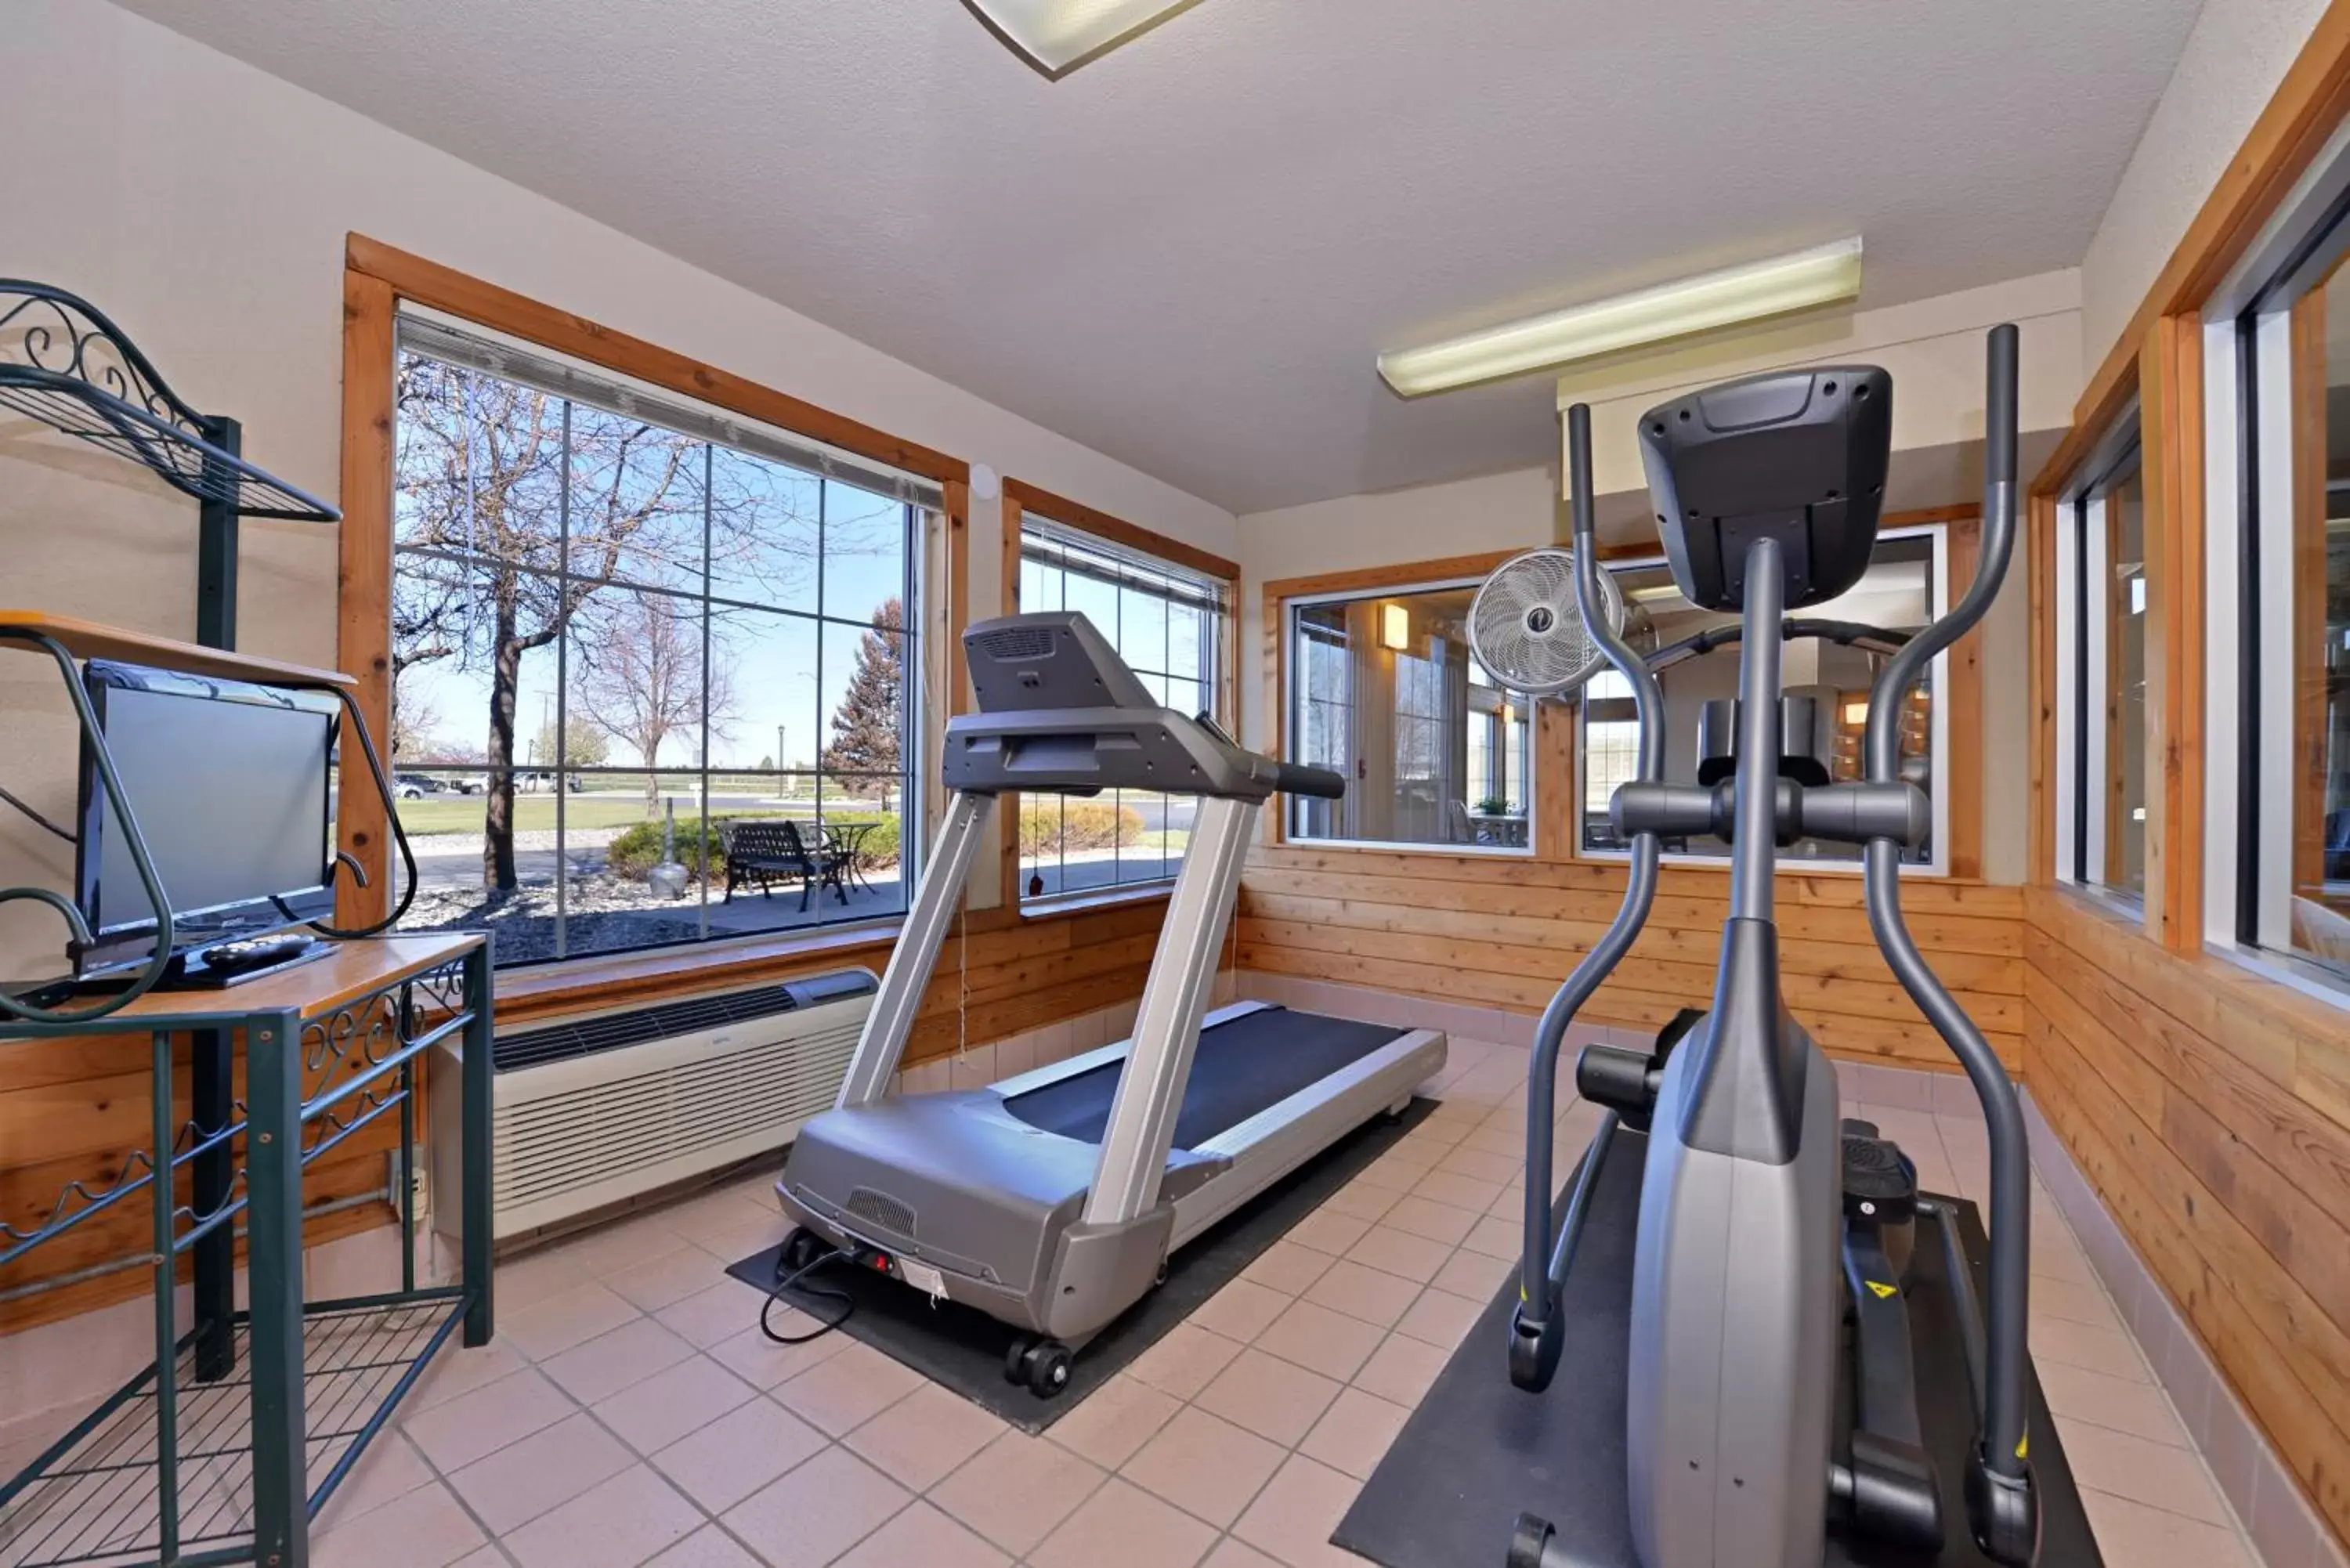 Fitness centre/facilities, Fitness Center/Facilities in Kelly Inn Billings